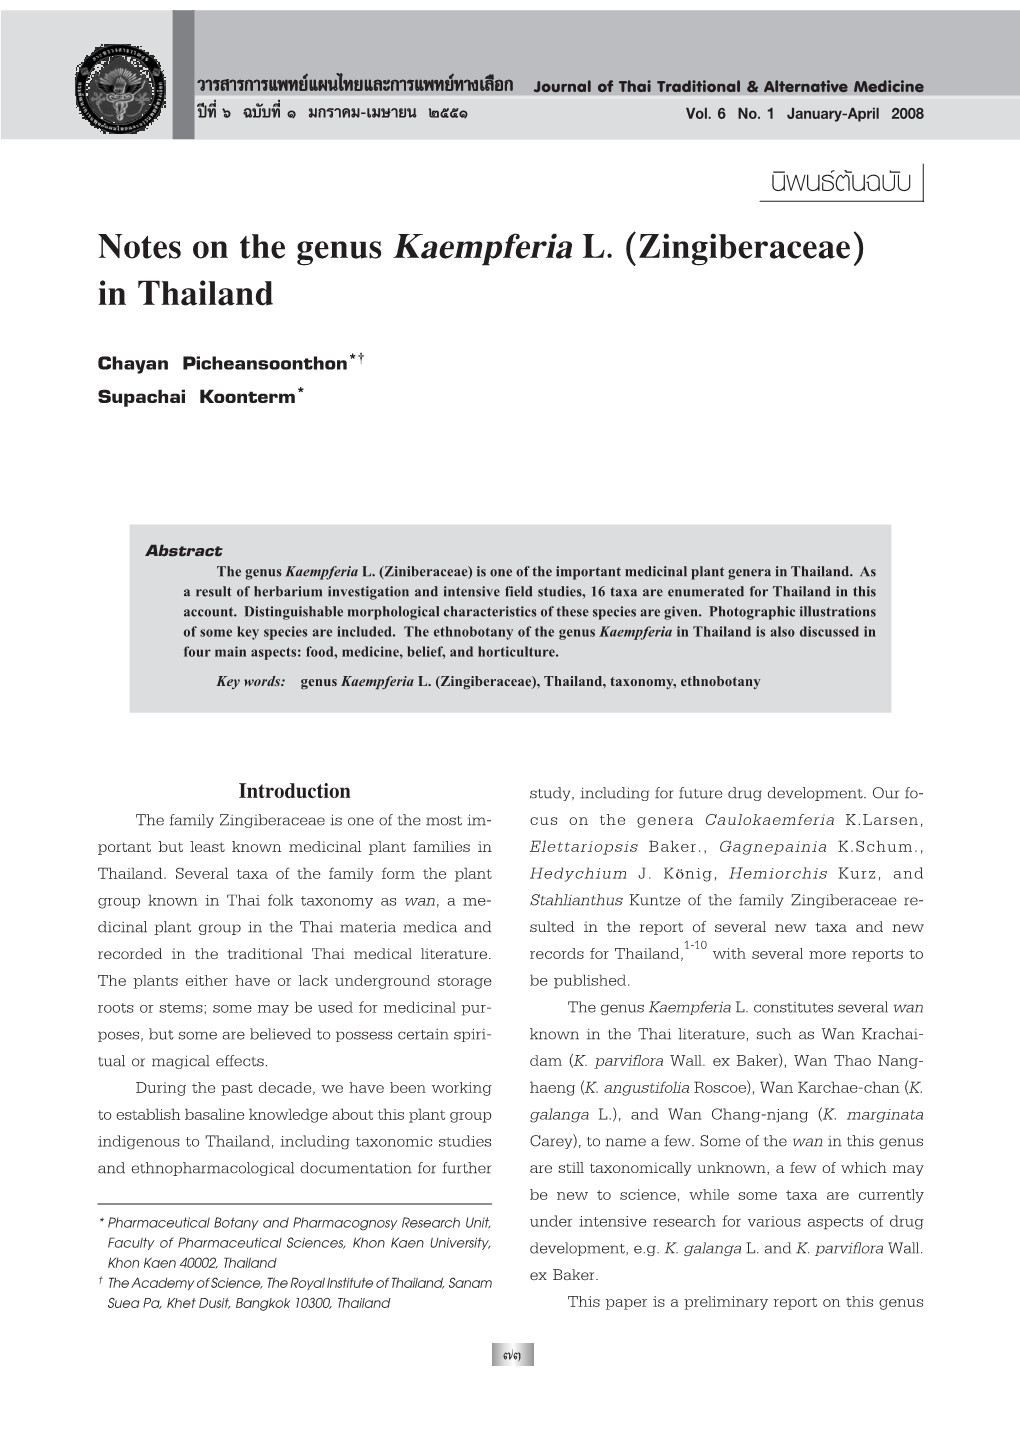 Notes on the Genus Kaempferia L. (Zingiberaceae) in Thailand